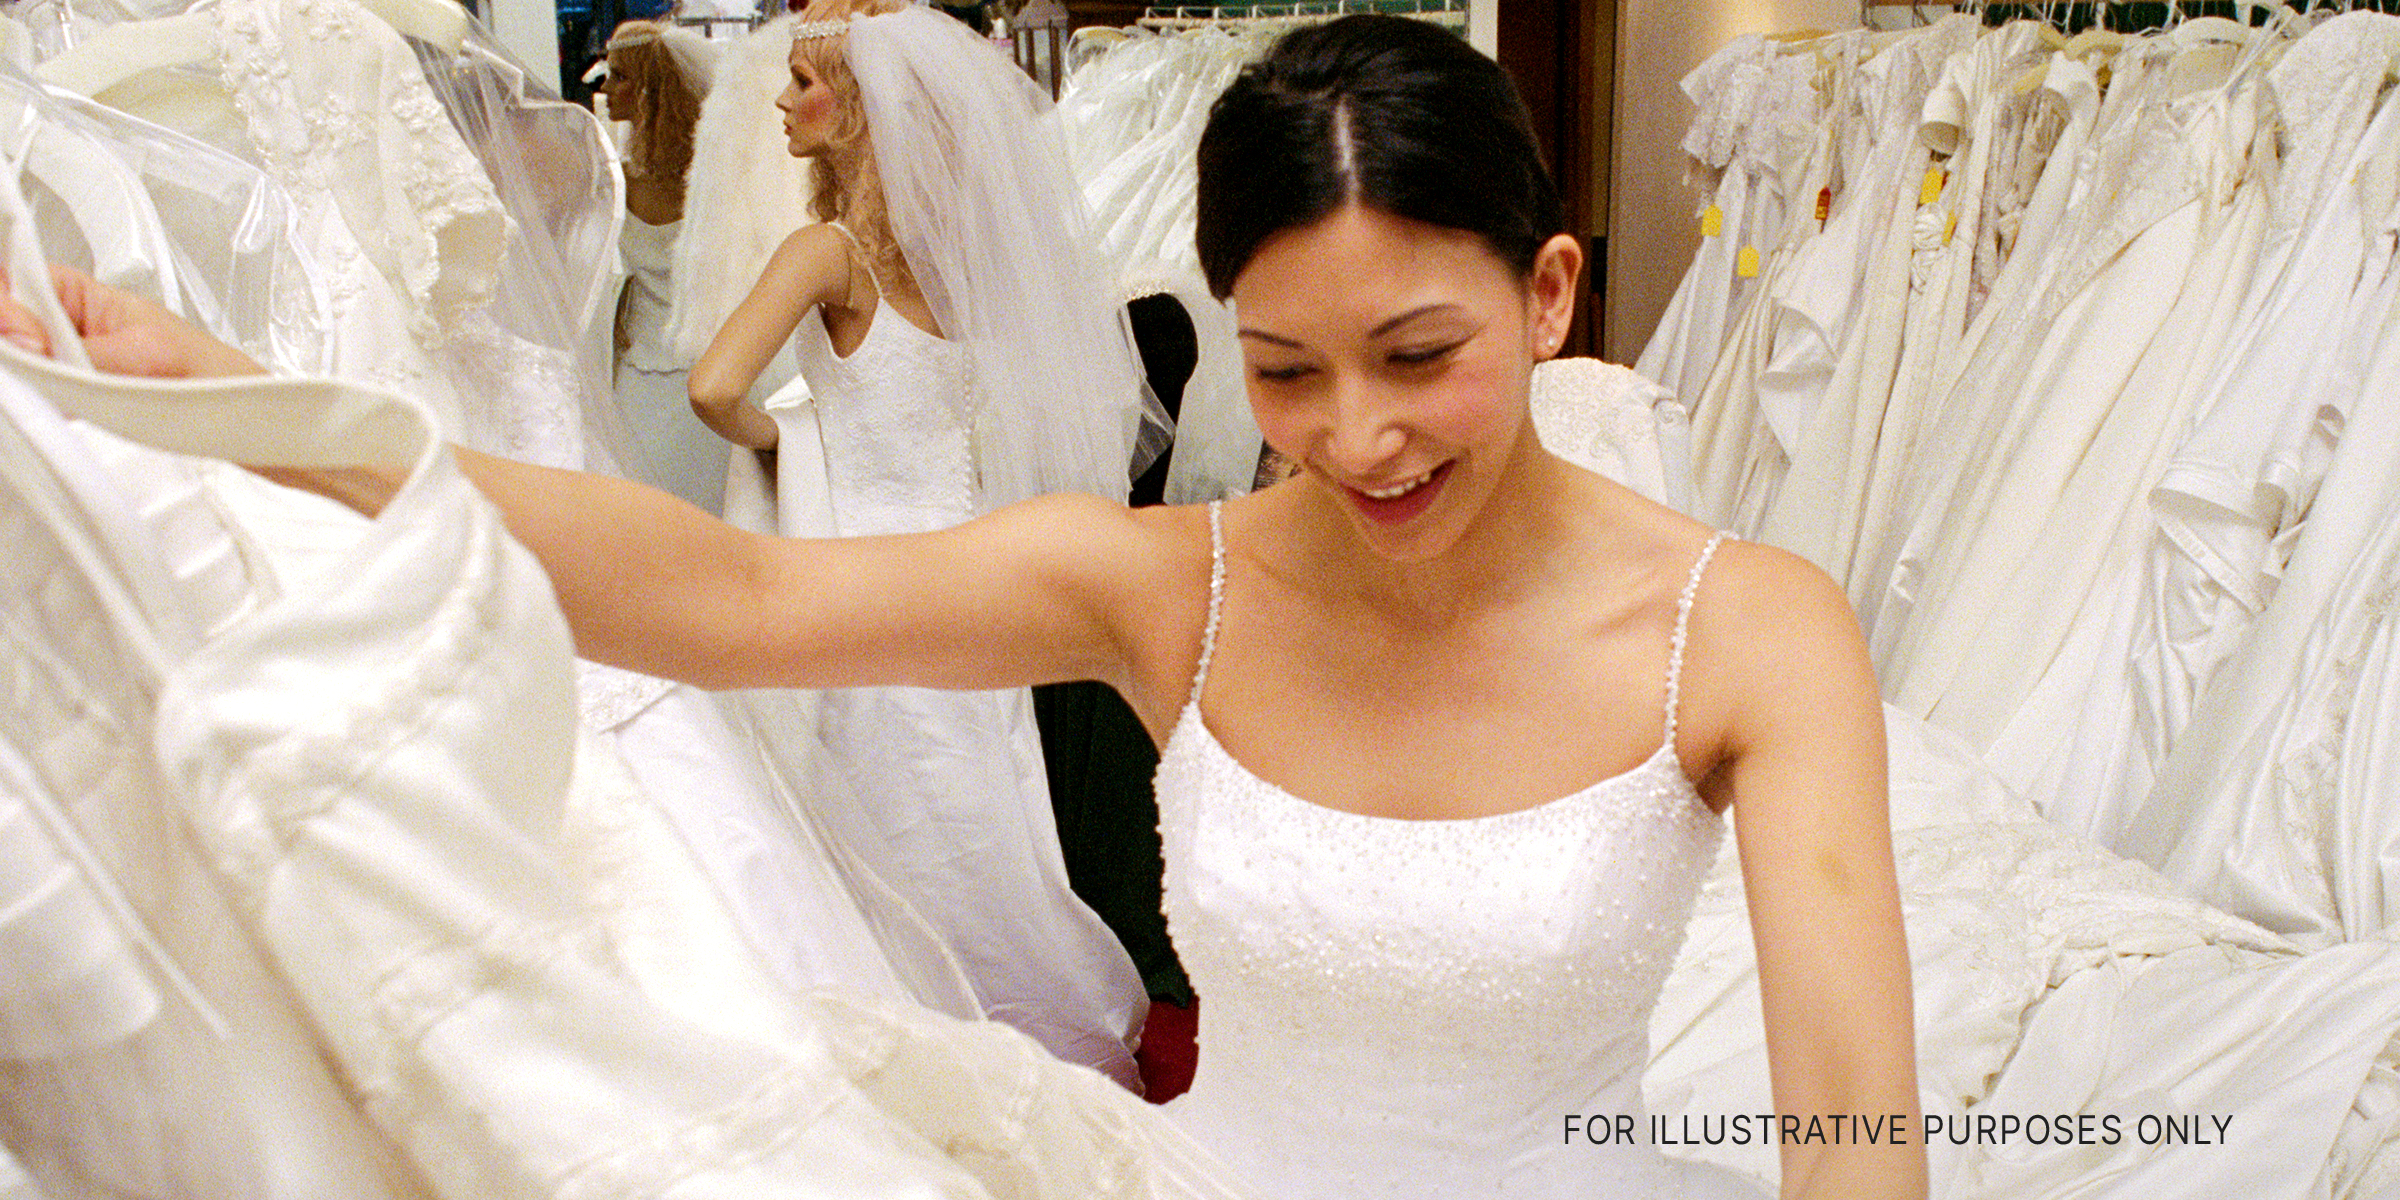 Happy bride | Source: Shutterstock